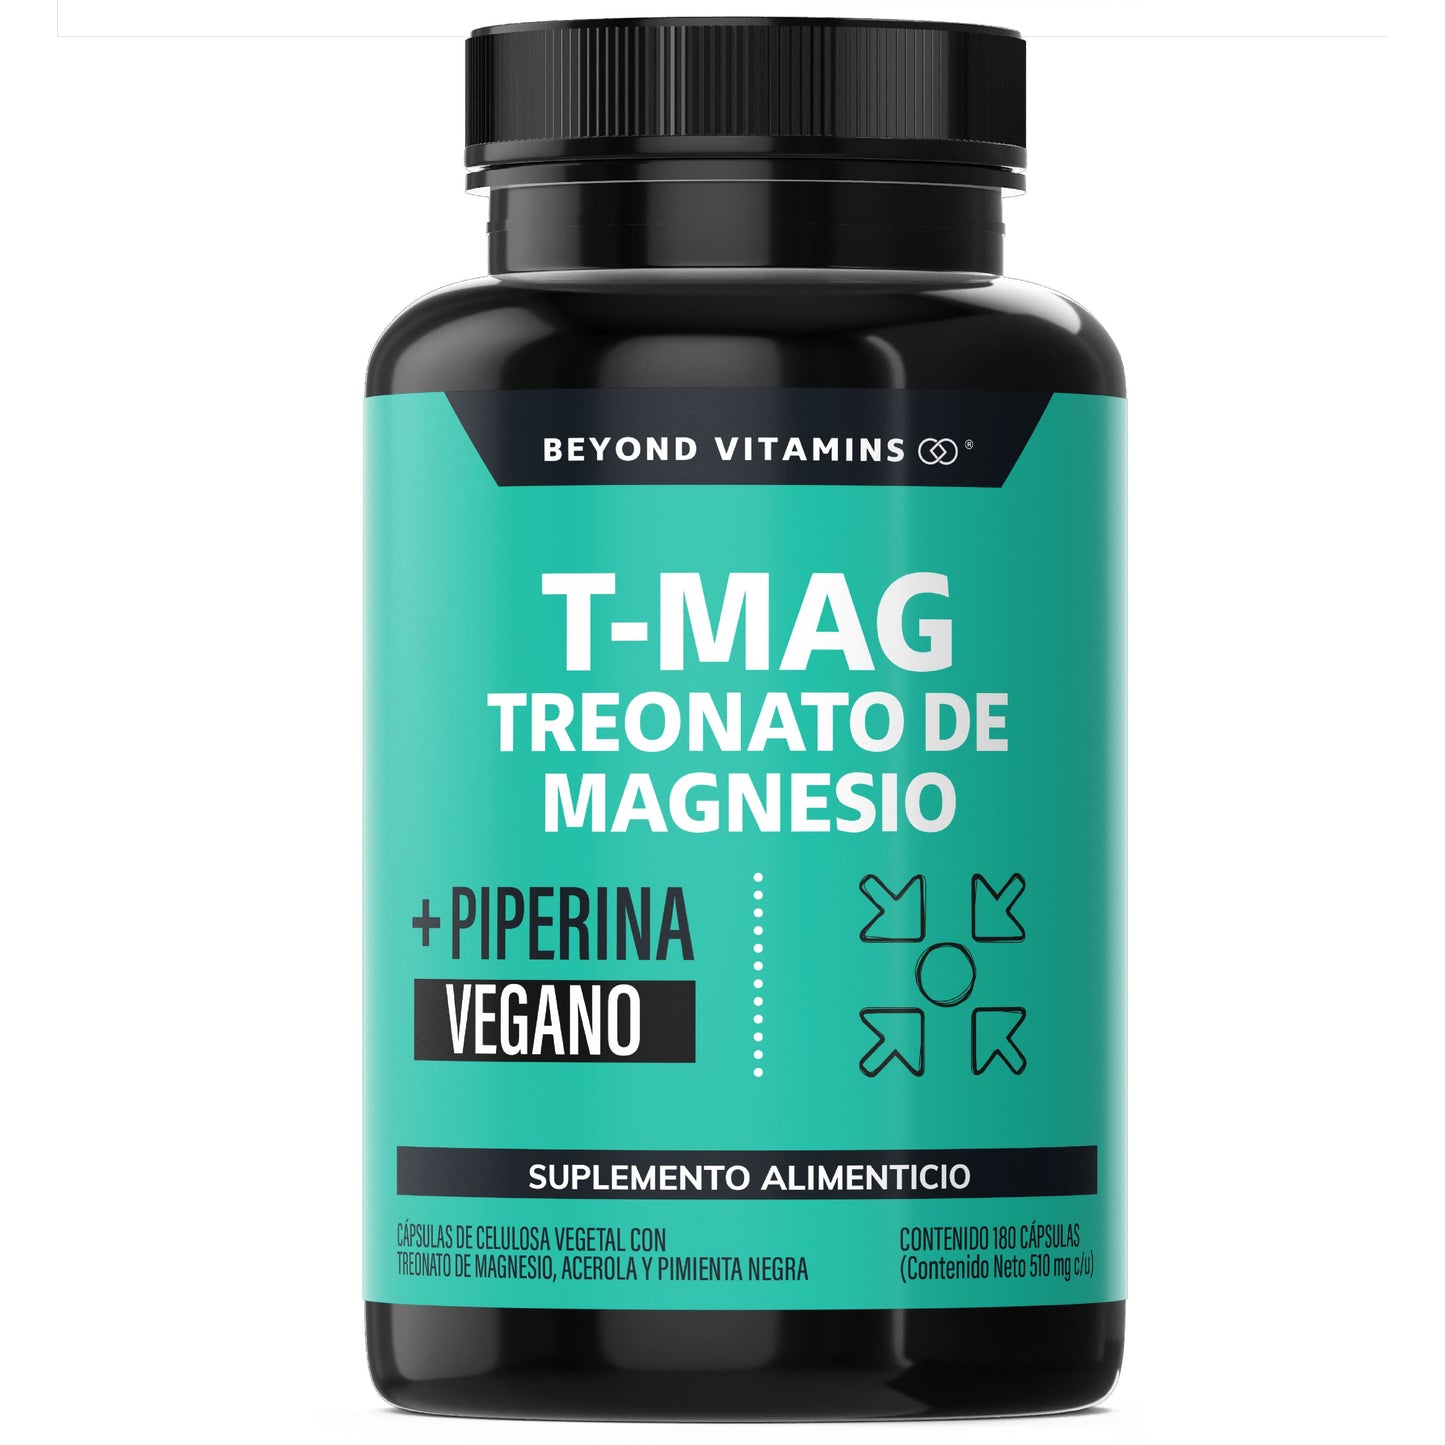 T- MAG Treonato de Magnesio